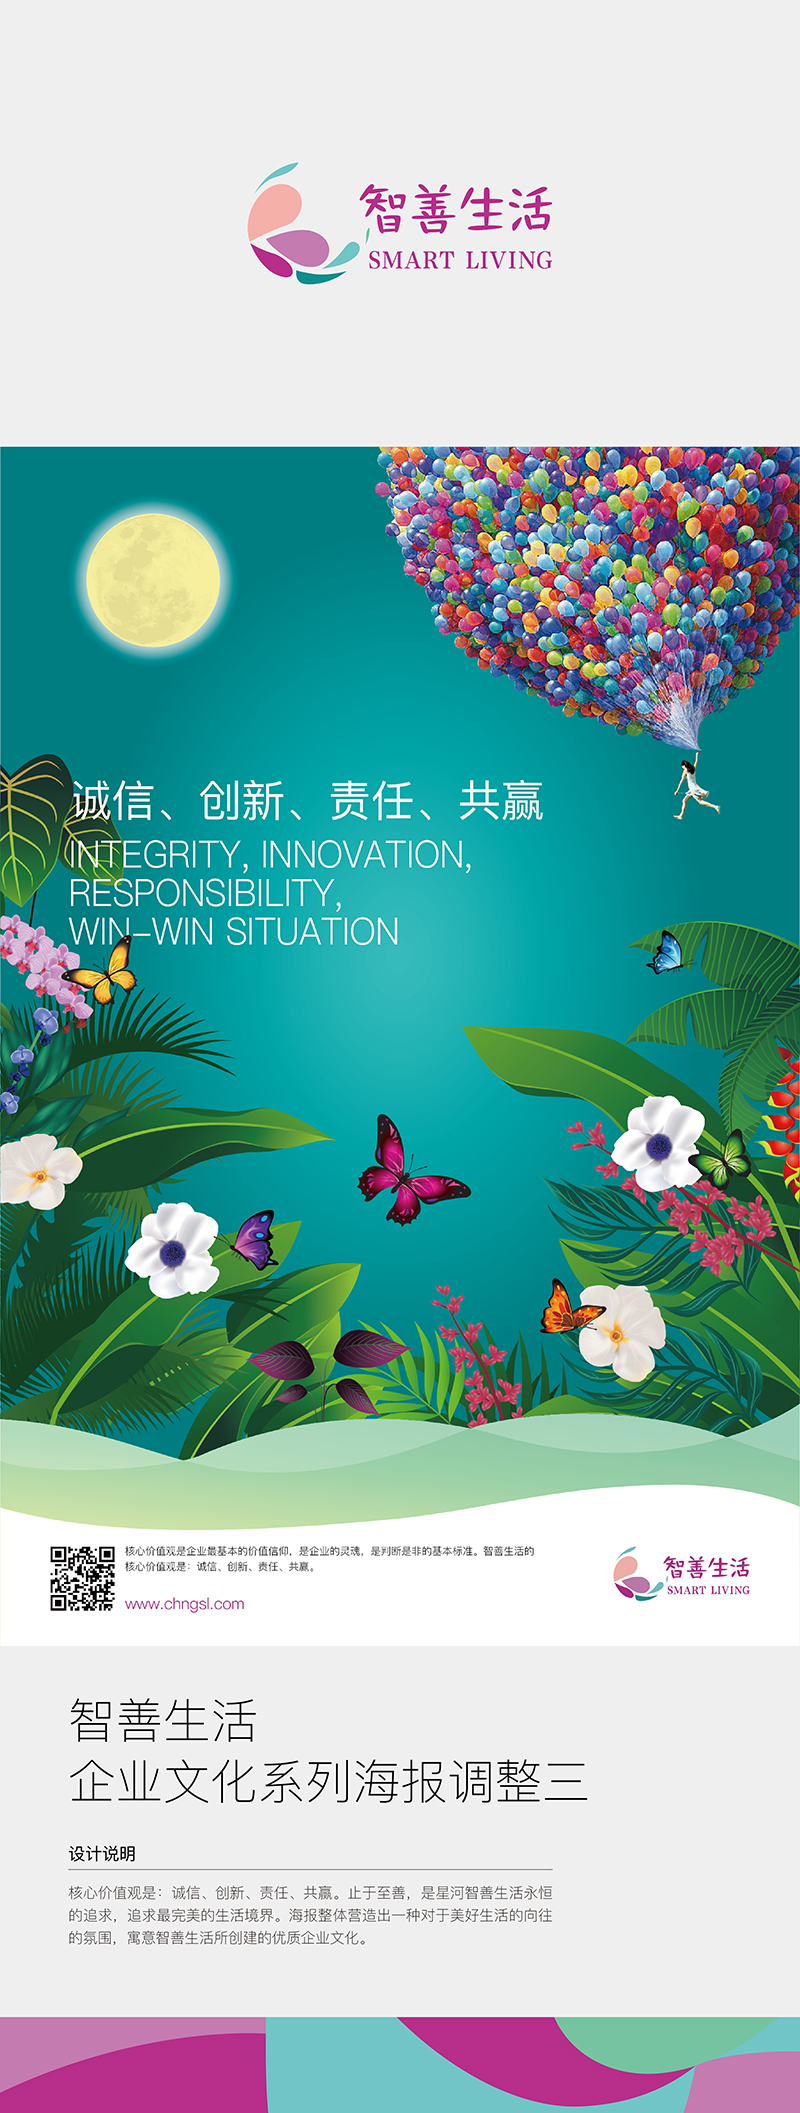 深圳宣传画册设计